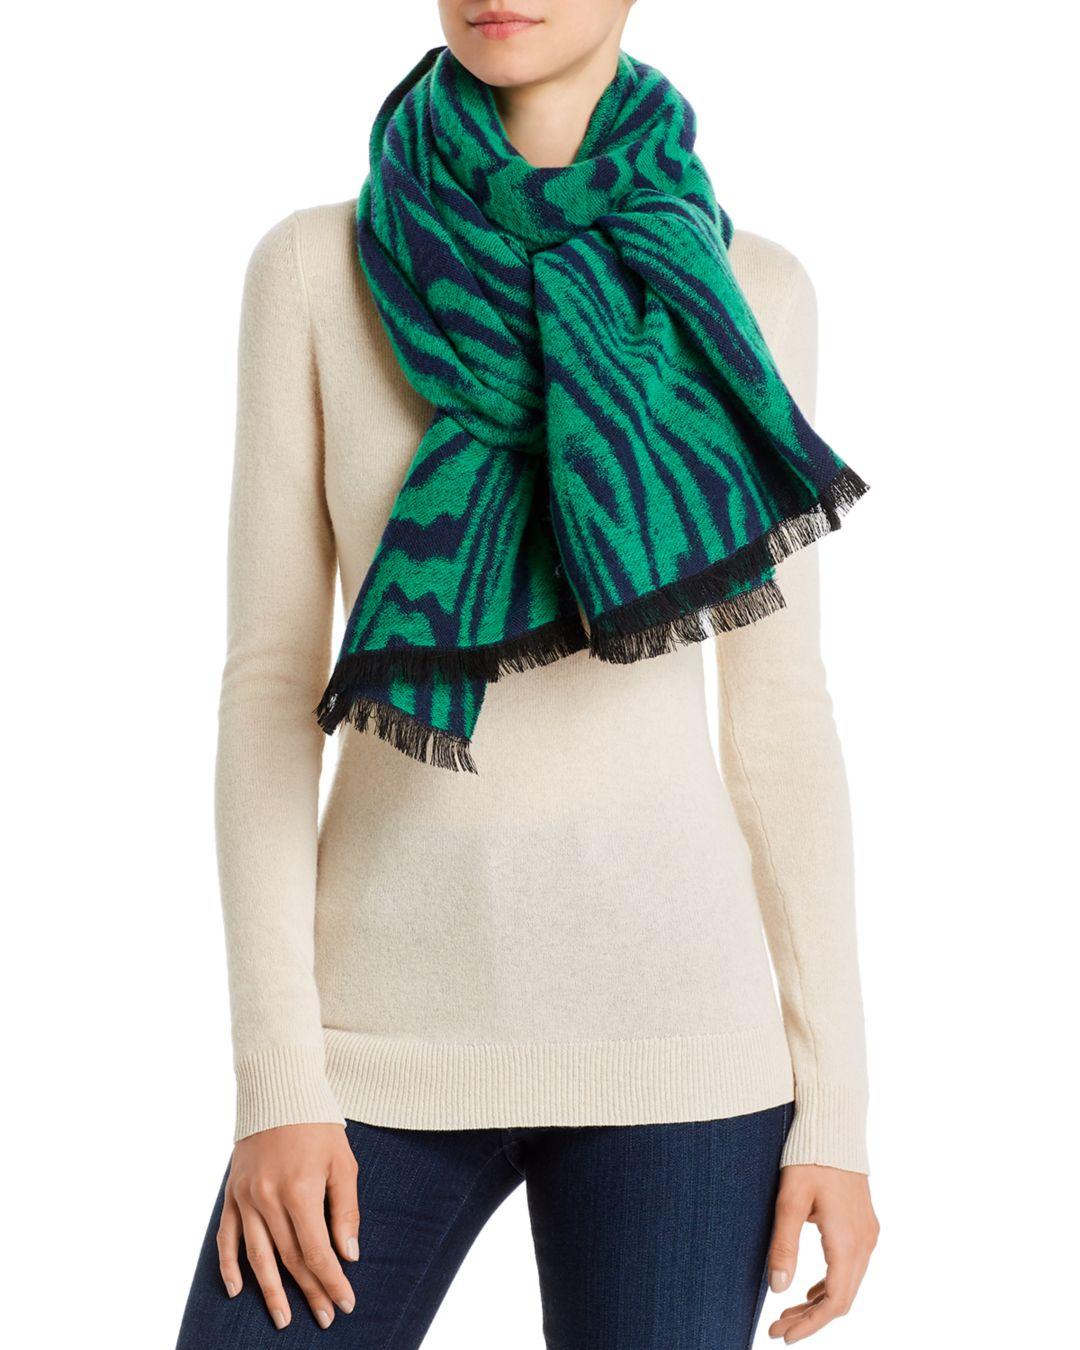 Valentina зеленый шарф. Черно зеленый шарф. Зеленый шарф на человеке. Хью Денси зеленый шарф.